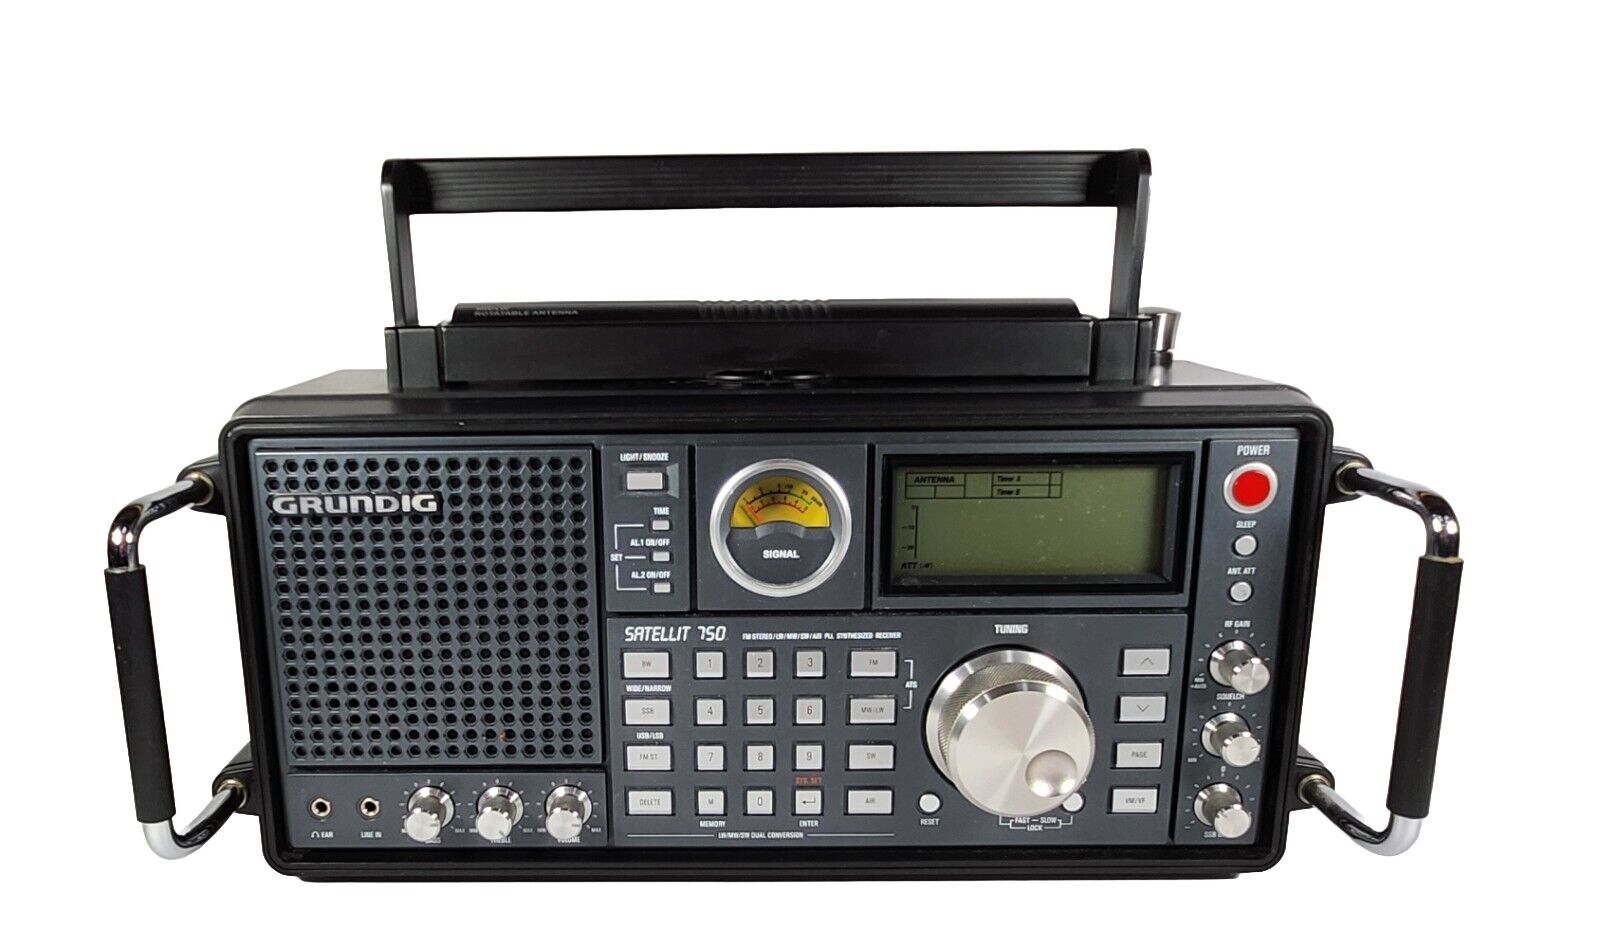 GRUNDIG ETON SATELLIT 750 FM Stereo/LW/MW/SW•SSB/Air Band PLL Receiver AS IS